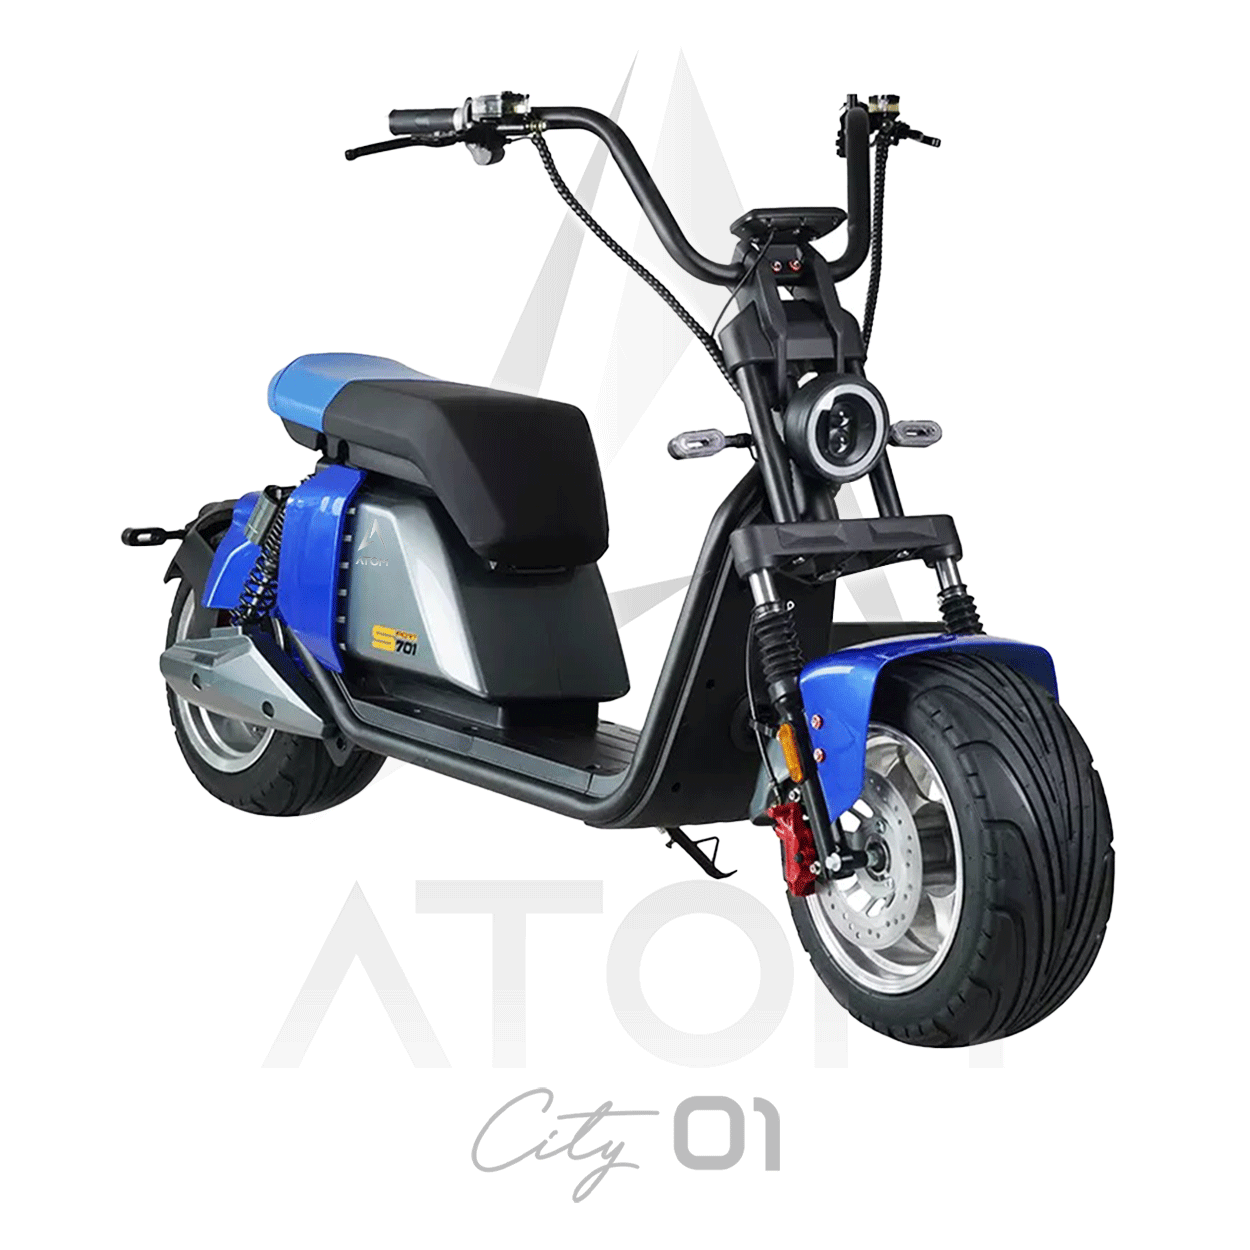 Scooter électrique, Atom City 01 | 3000 W | 50 cc - Atom Motors